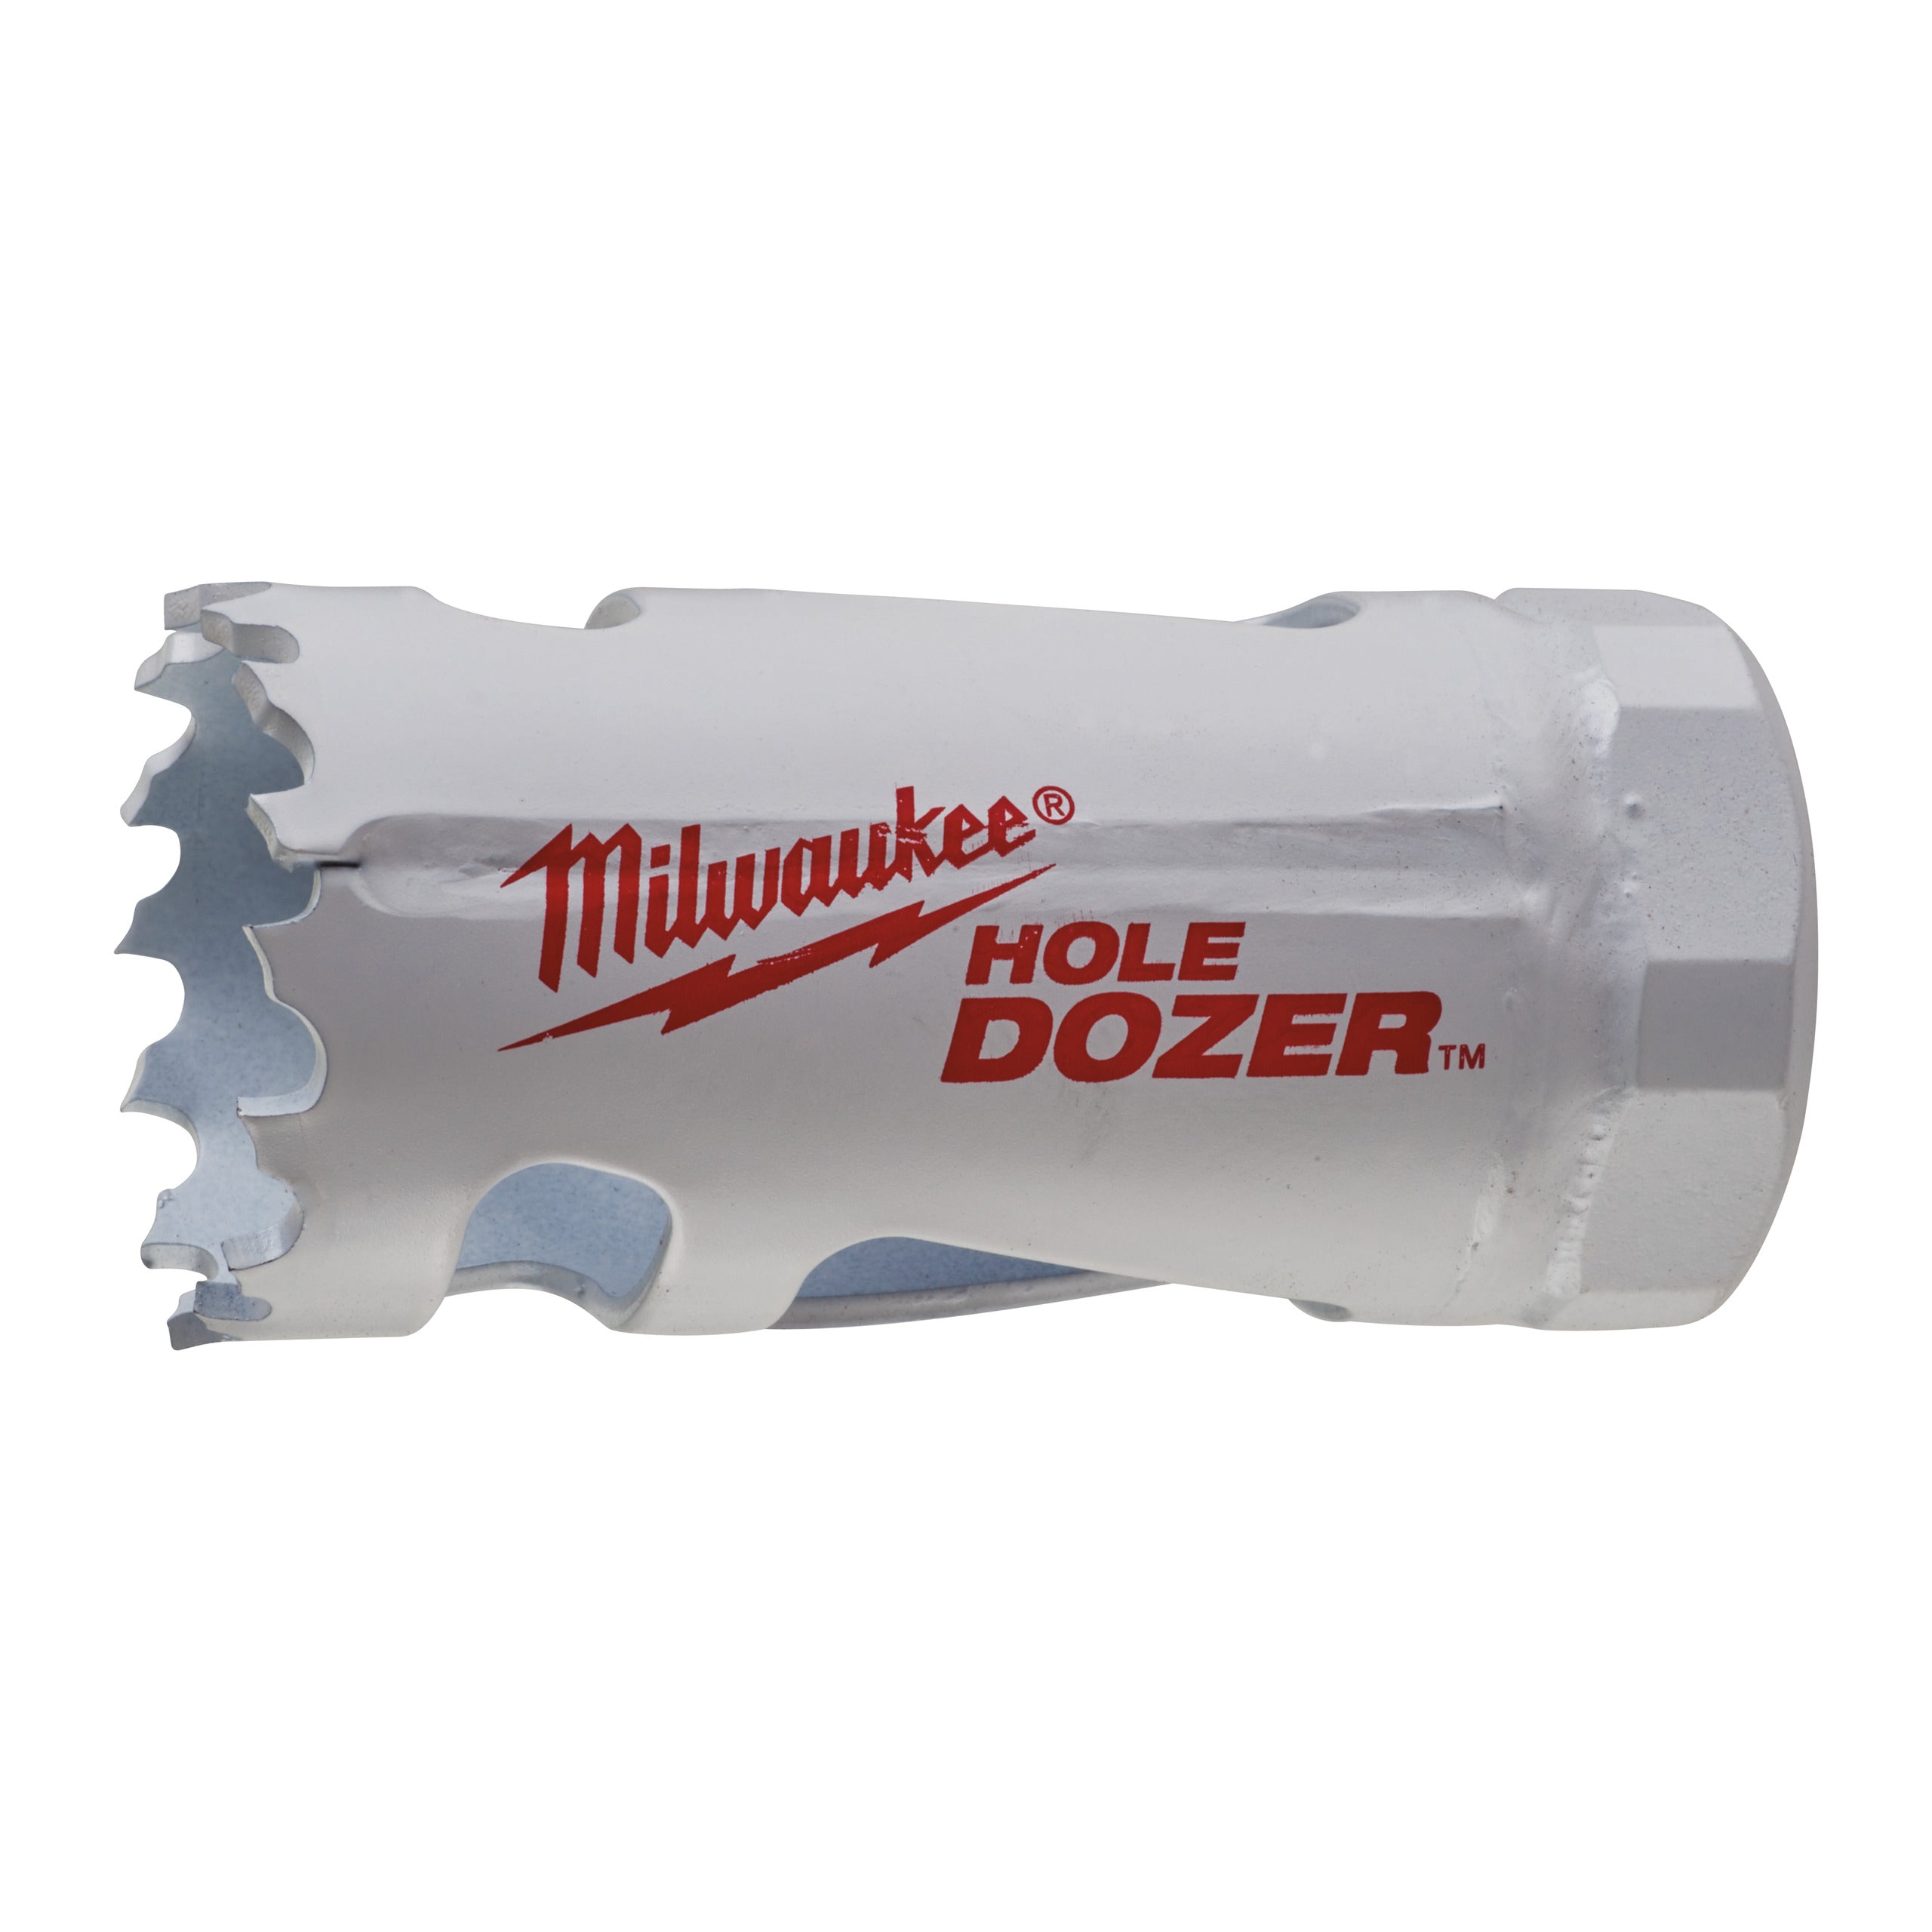 Carotă Milwaukee HOLE DOZER™ bi-metal Ø27 mm 49560047